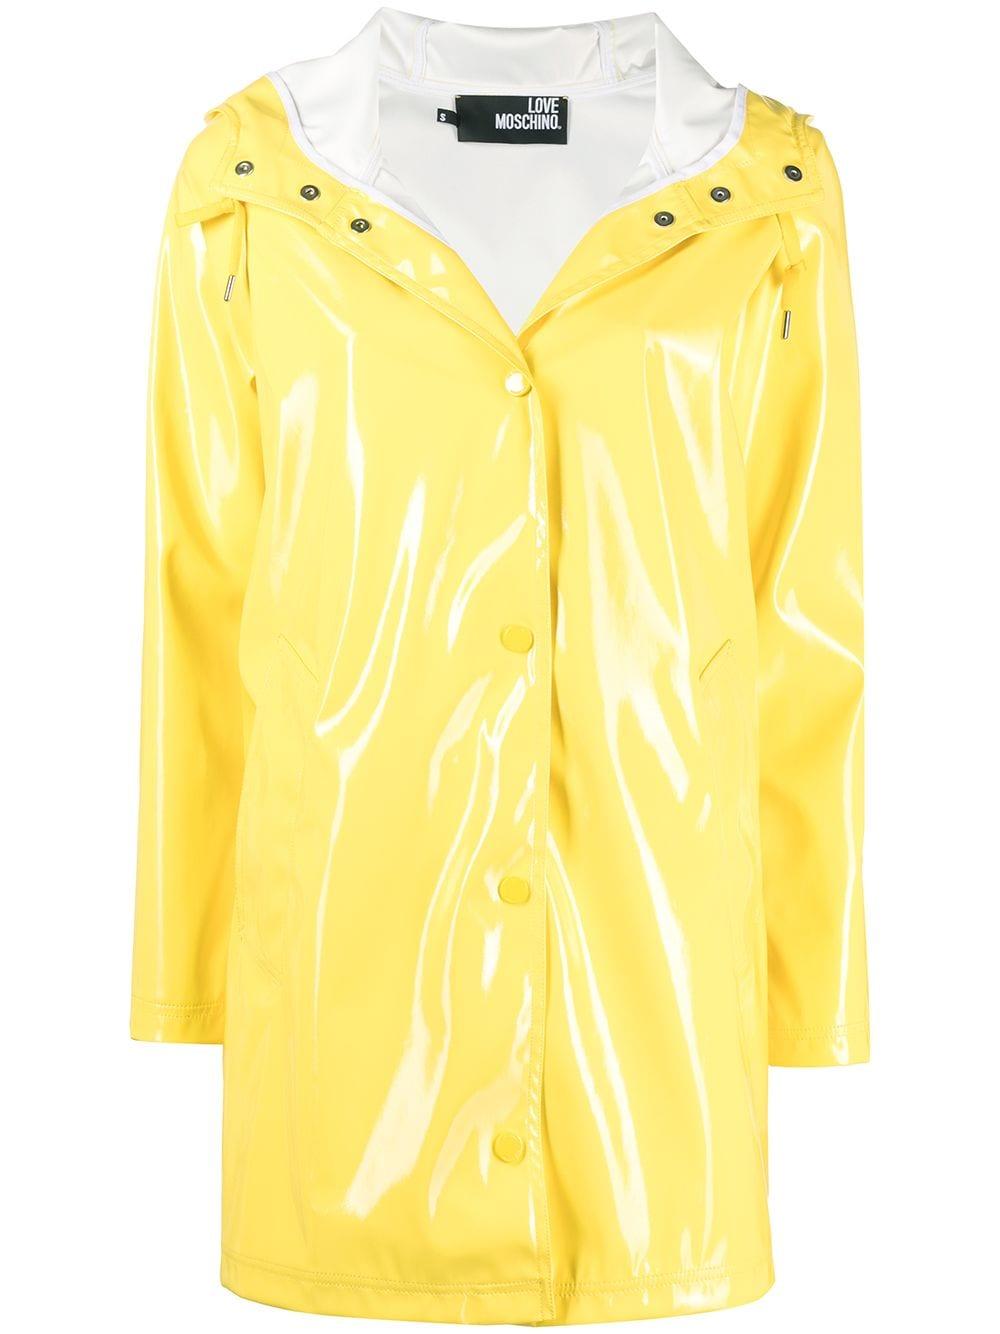 Love Moschino Glossy Rain Mac in Yellow | Lyst